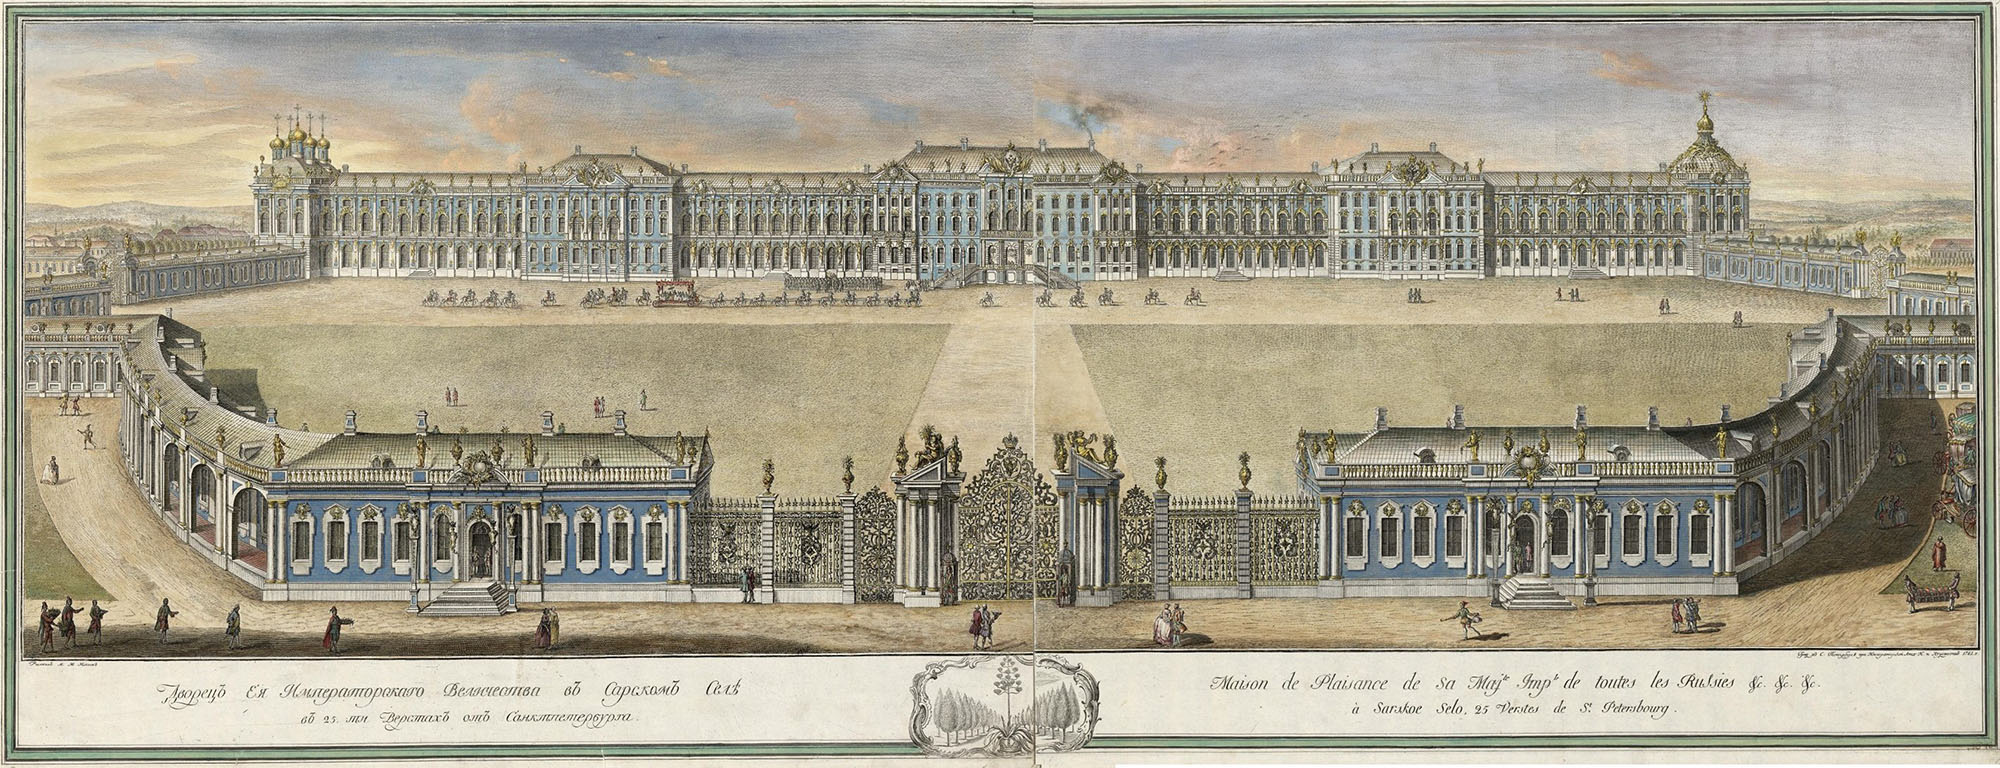 Вид Екатерининского дворца в Царском Селе со стороны парадного двора. 1756-1761. Эрмитаж, Санкт-Петербург.